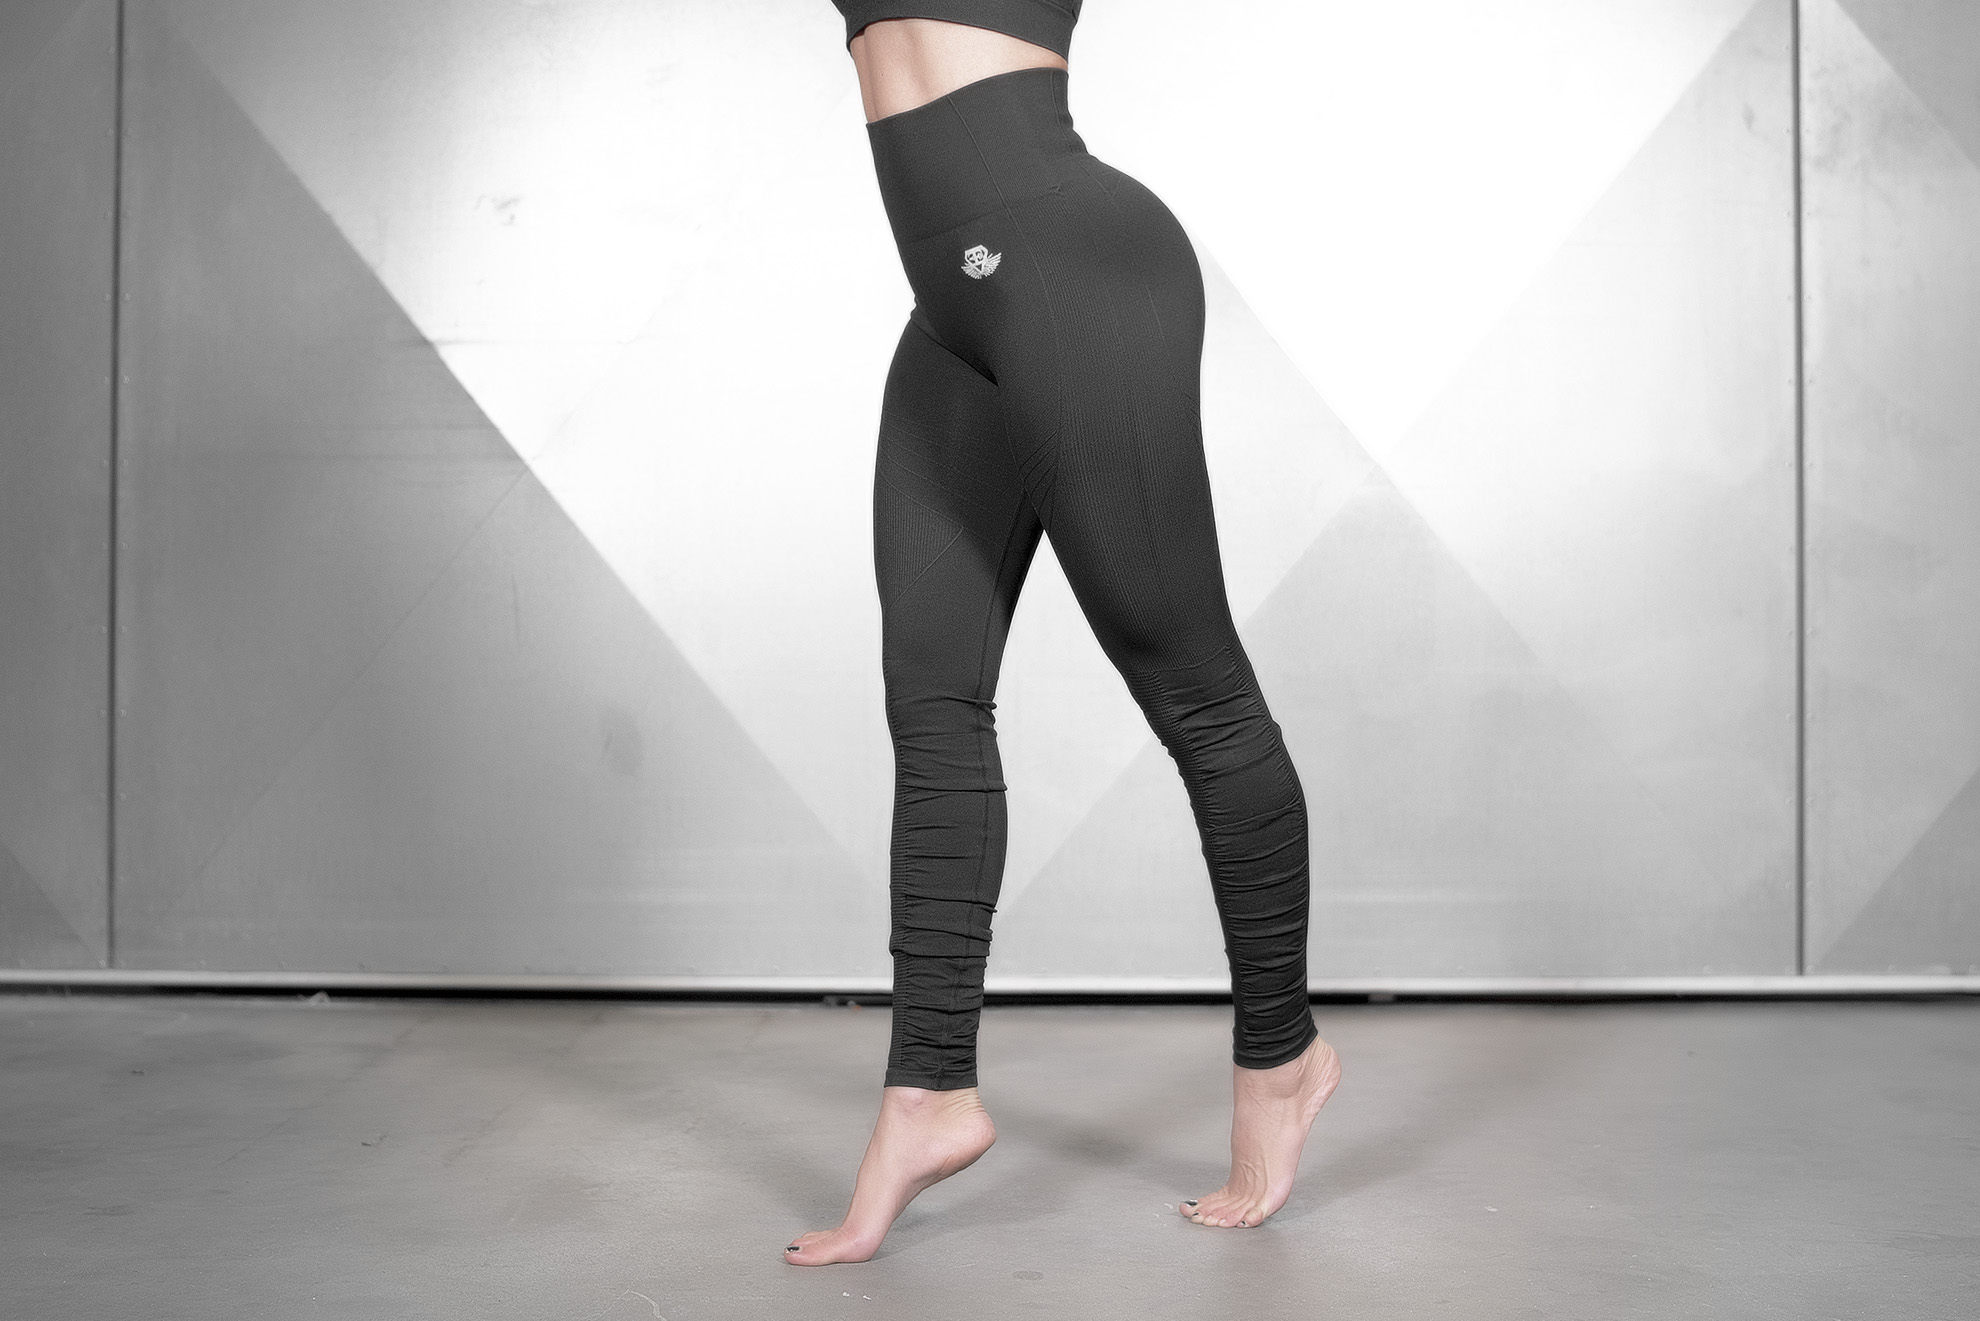 https://www.engineered-life.com/wp-content/uploads/2020/12/tellus-black-leggings-side.jpg